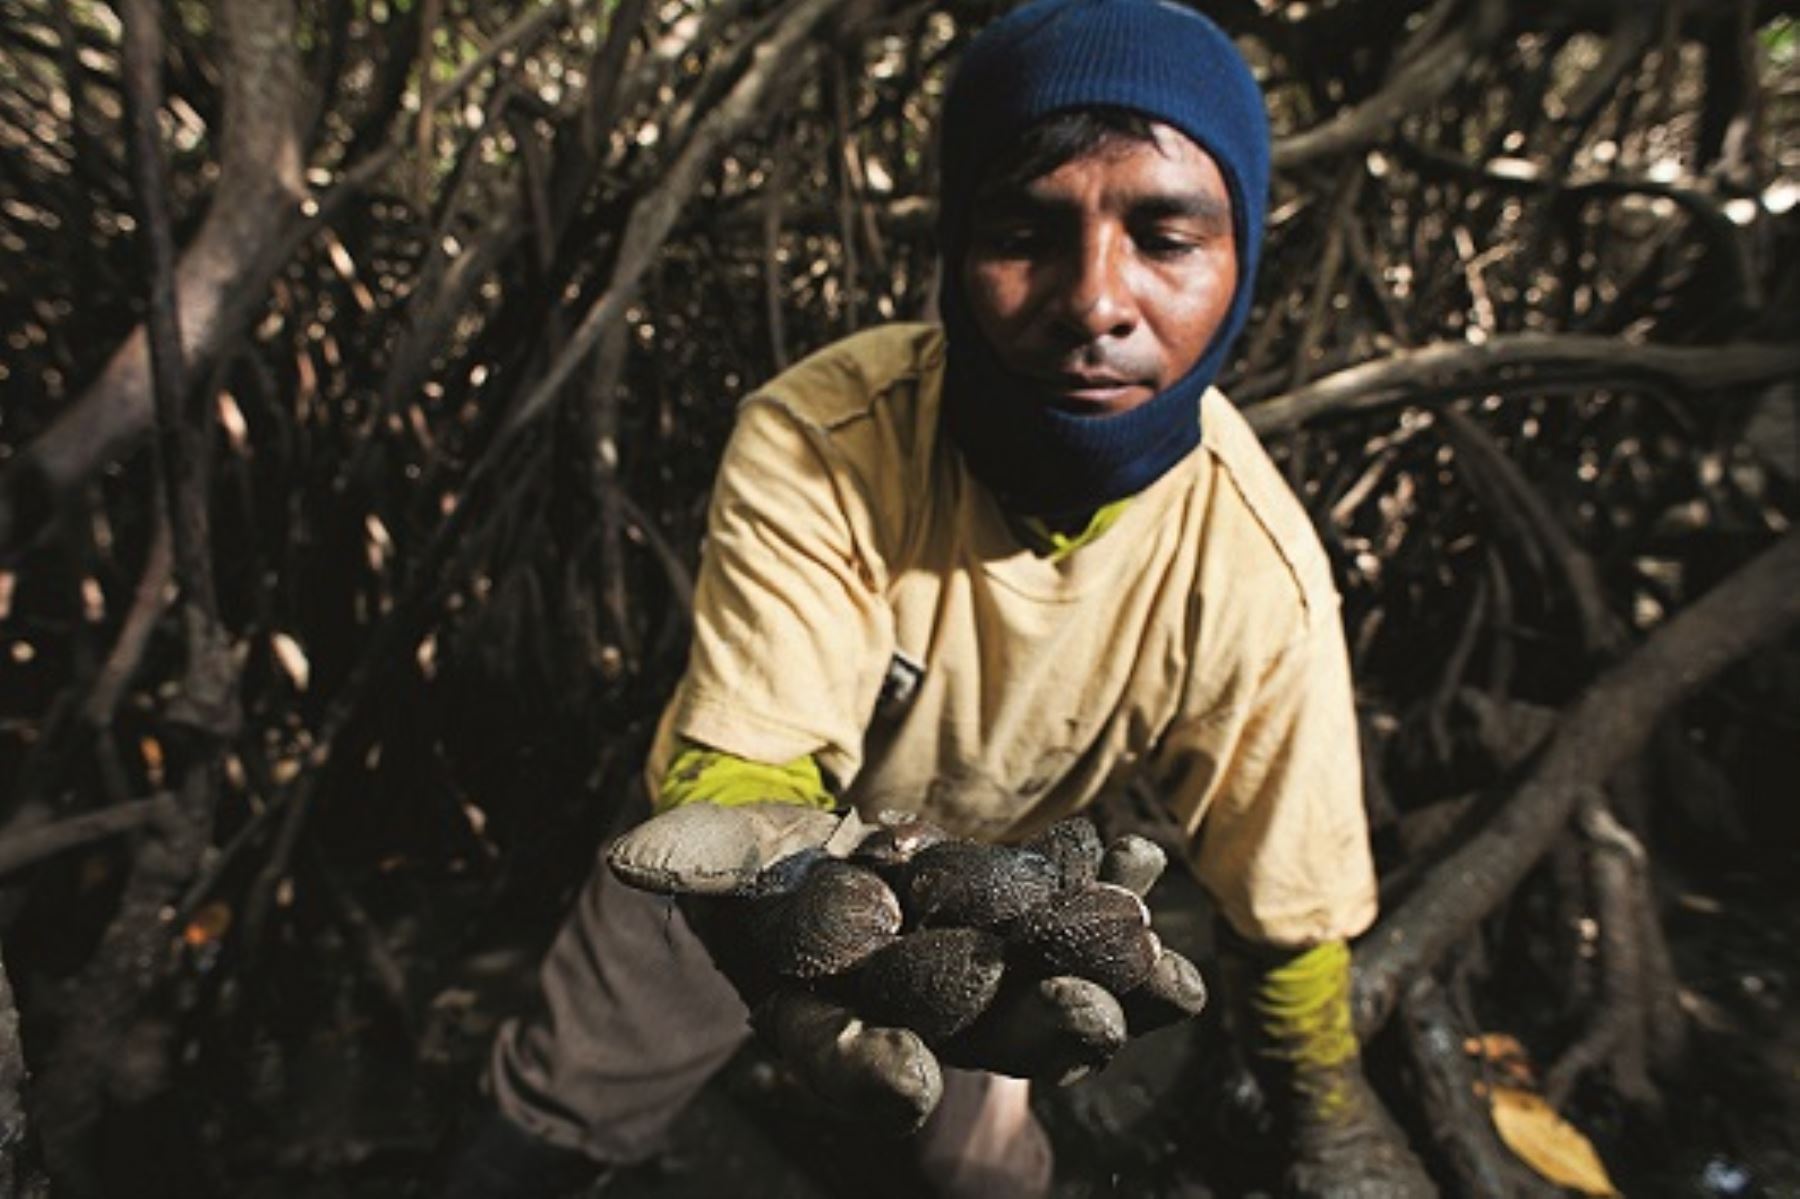 La Iniciativa Pesquerías Costeras, liderada en Perú por el Ministerio de Ambiente, con soporte técnico del Programa de las Naciones Unidas para el Desarrollo, lleva a cabo un modelo piloto donde las mismas comunidades pesqueras gestionan esta área y participan en una investigación para crear, con ayuda de la ciencia y la tecnología, semillas de concha negra para repoblar los manglares. ANDINA/Difusión